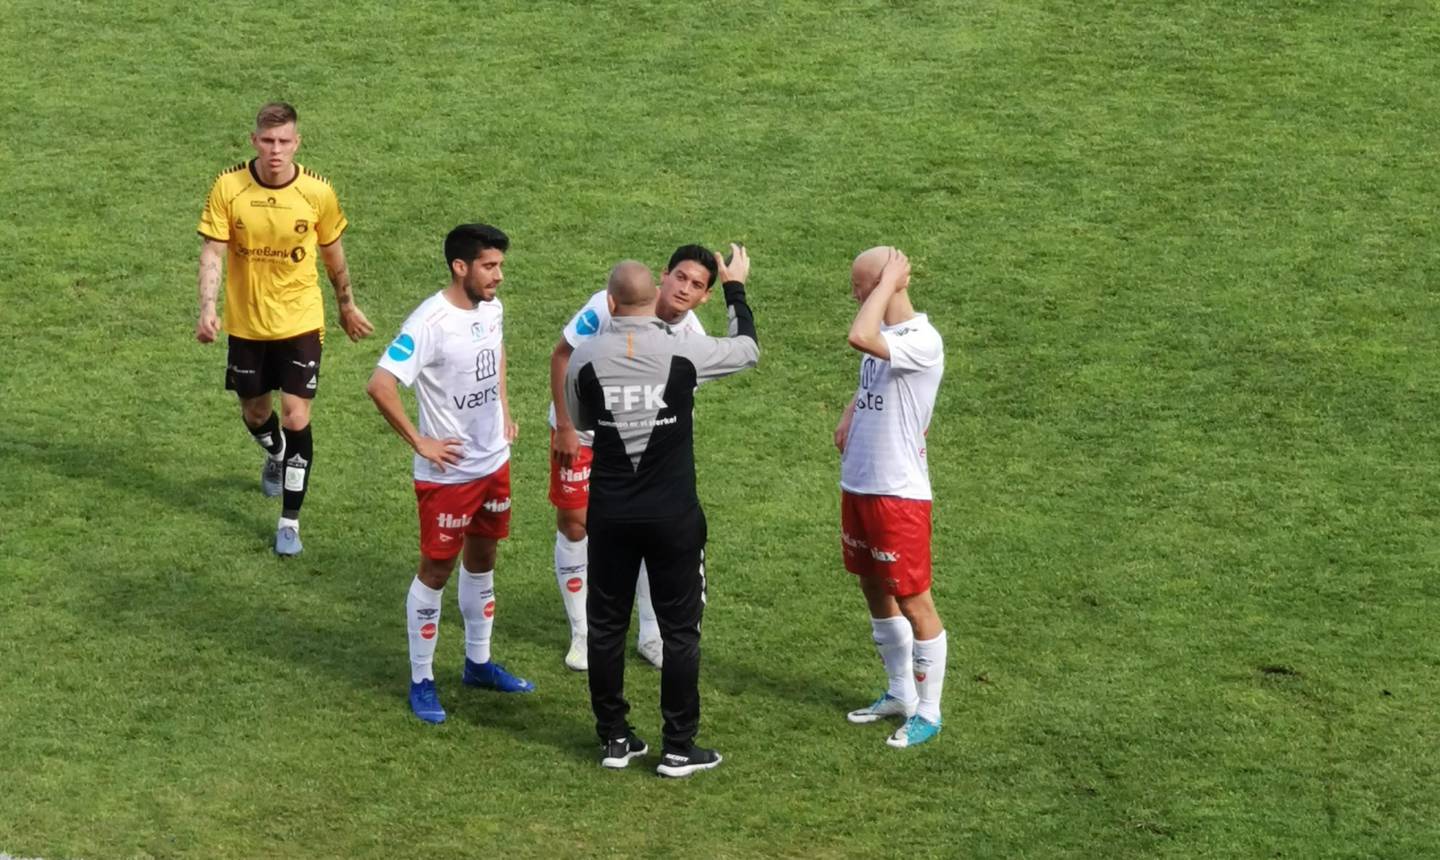 TOMÅLSSKÅRER: FFK-angriper Kjell Rune Sellin (2 fra høyre), som her får instrukser i pausen fra Kasey Wehrmann med fortid som spiller i begge klubber, nå assistenttrener i FFK.